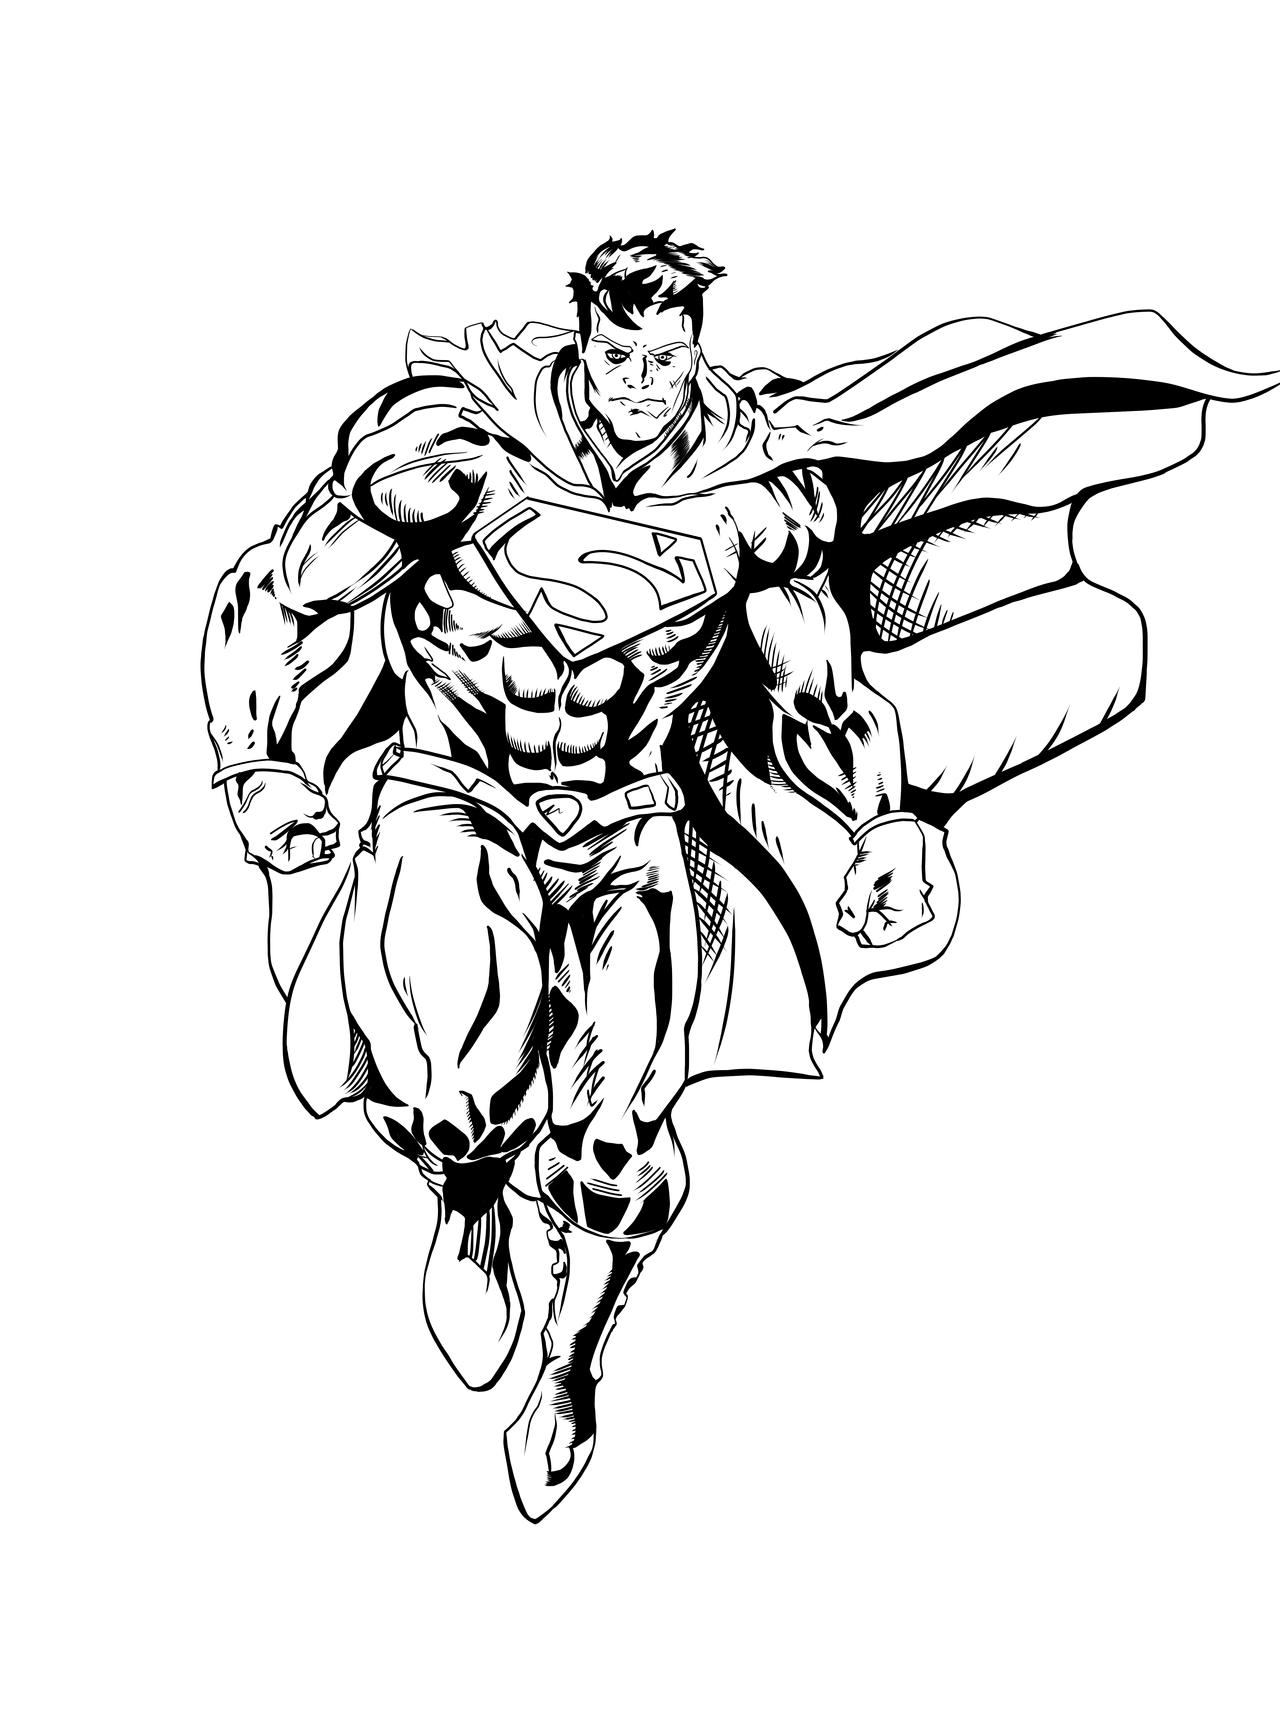 Superman Inking by sara-v-loid on DeviantArt